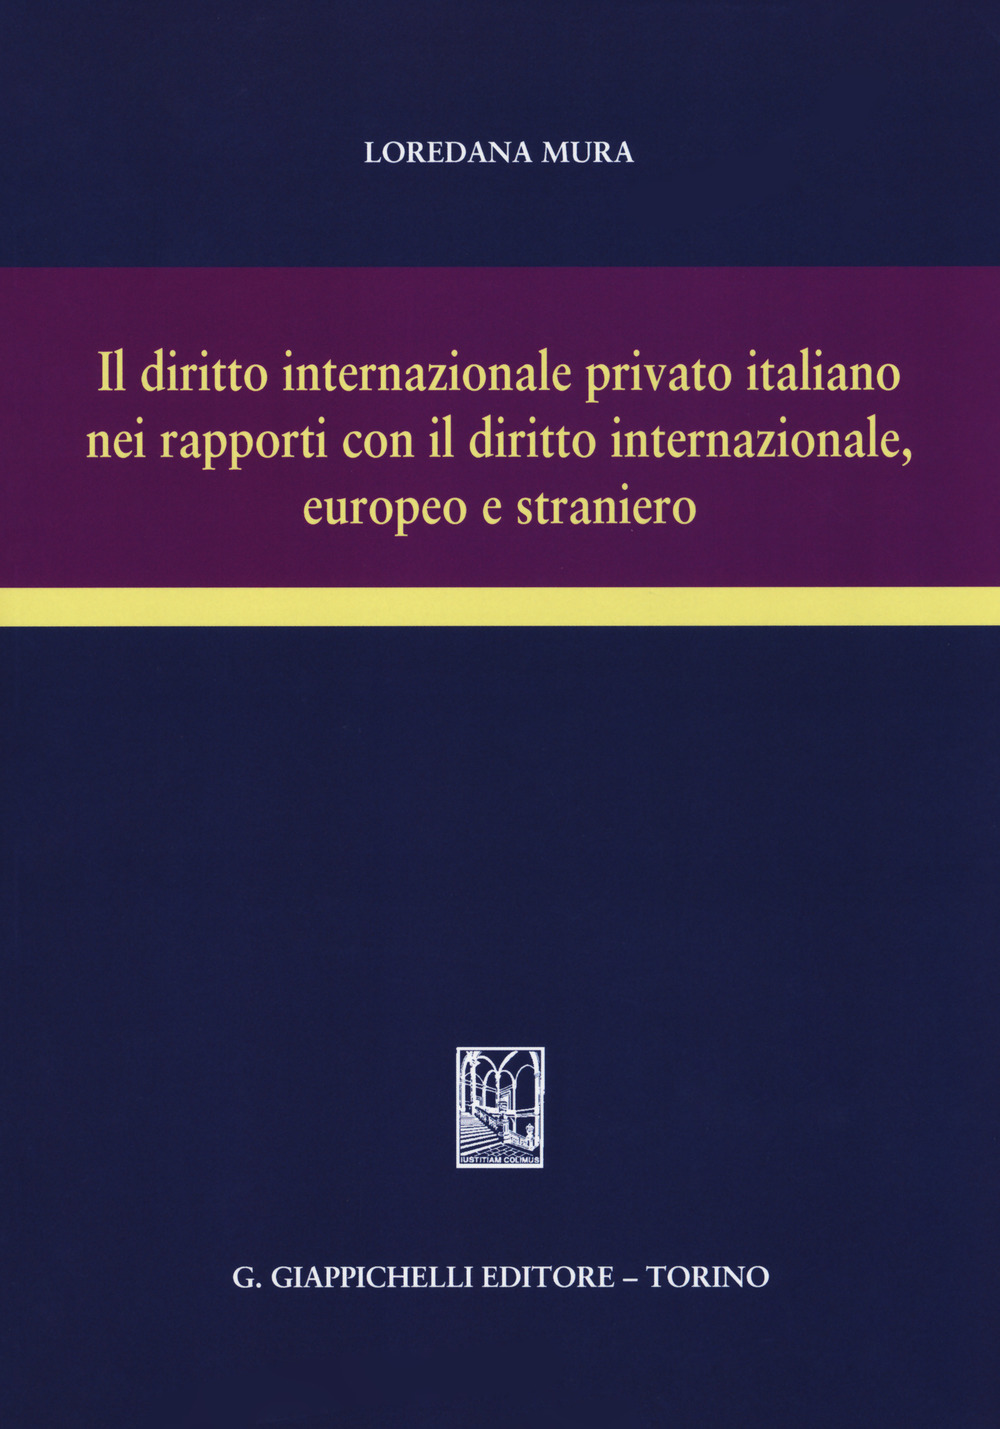 Image of Il diritto internazionale privato italiano nei rapporti con il diritto internazionale, europeo e straniero